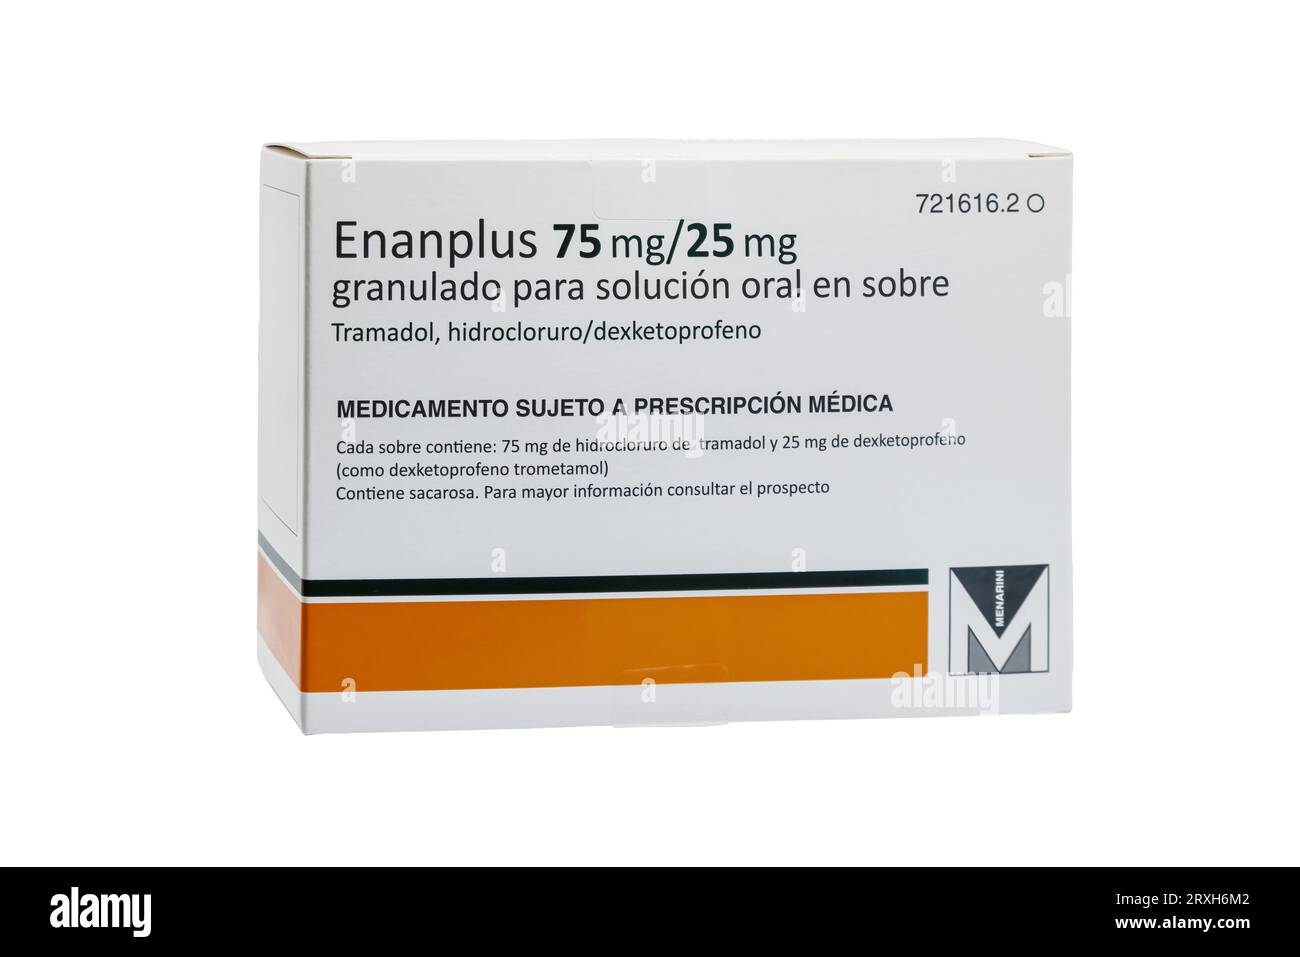 Huelva, Spagna - 25 settembre 2023: Scatola spagnola di Enanplus, una combinazione di Dexketoprofen e Tramadol utilizzata per il trattamento sintomatico a breve termine Foto Stock